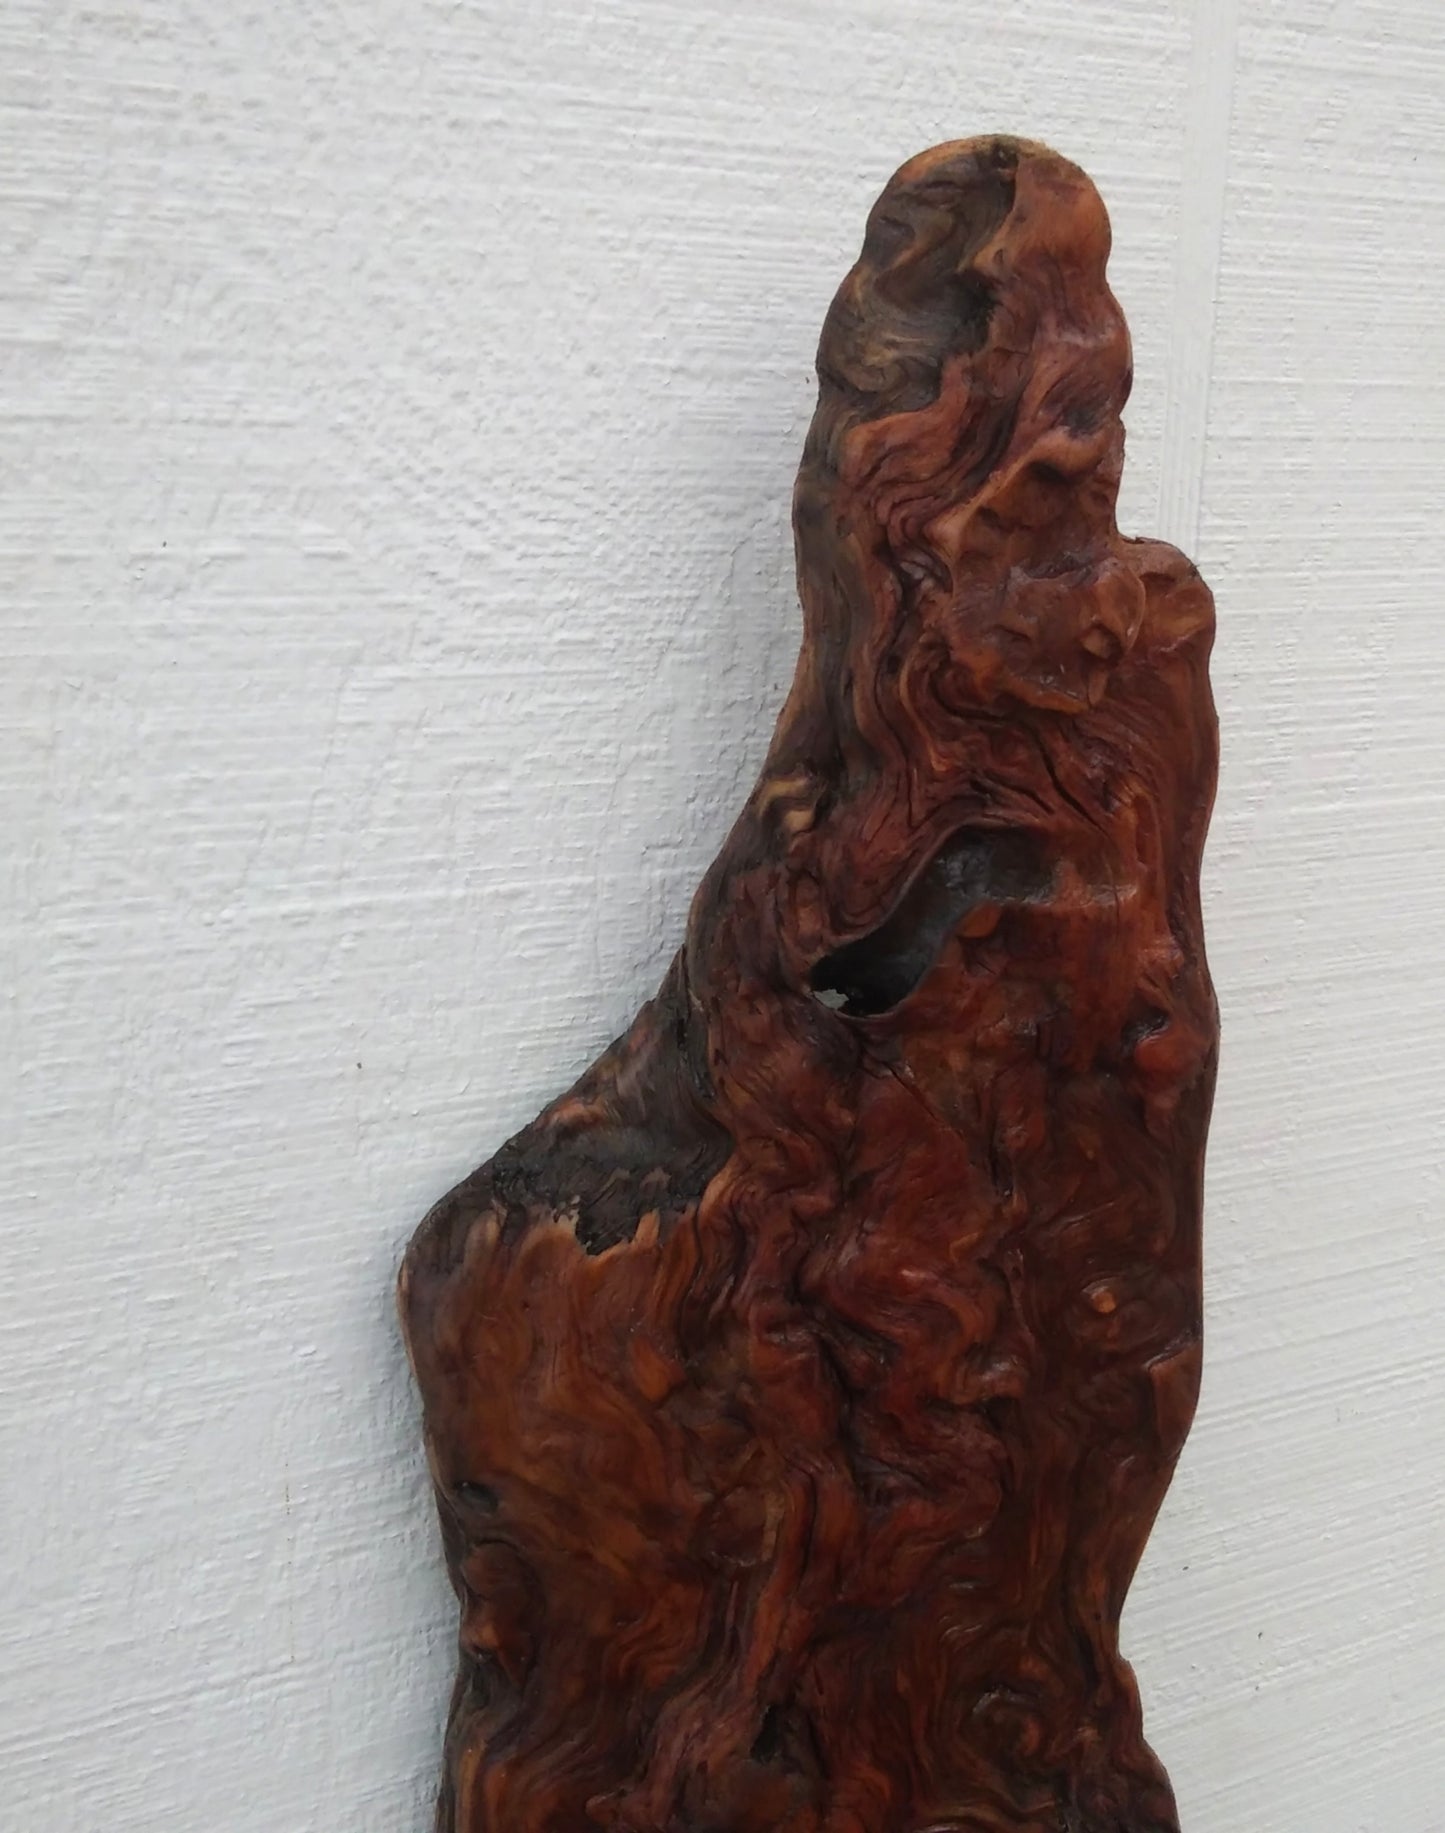 Rustic Wood Wall Sculpture Driftwood Art